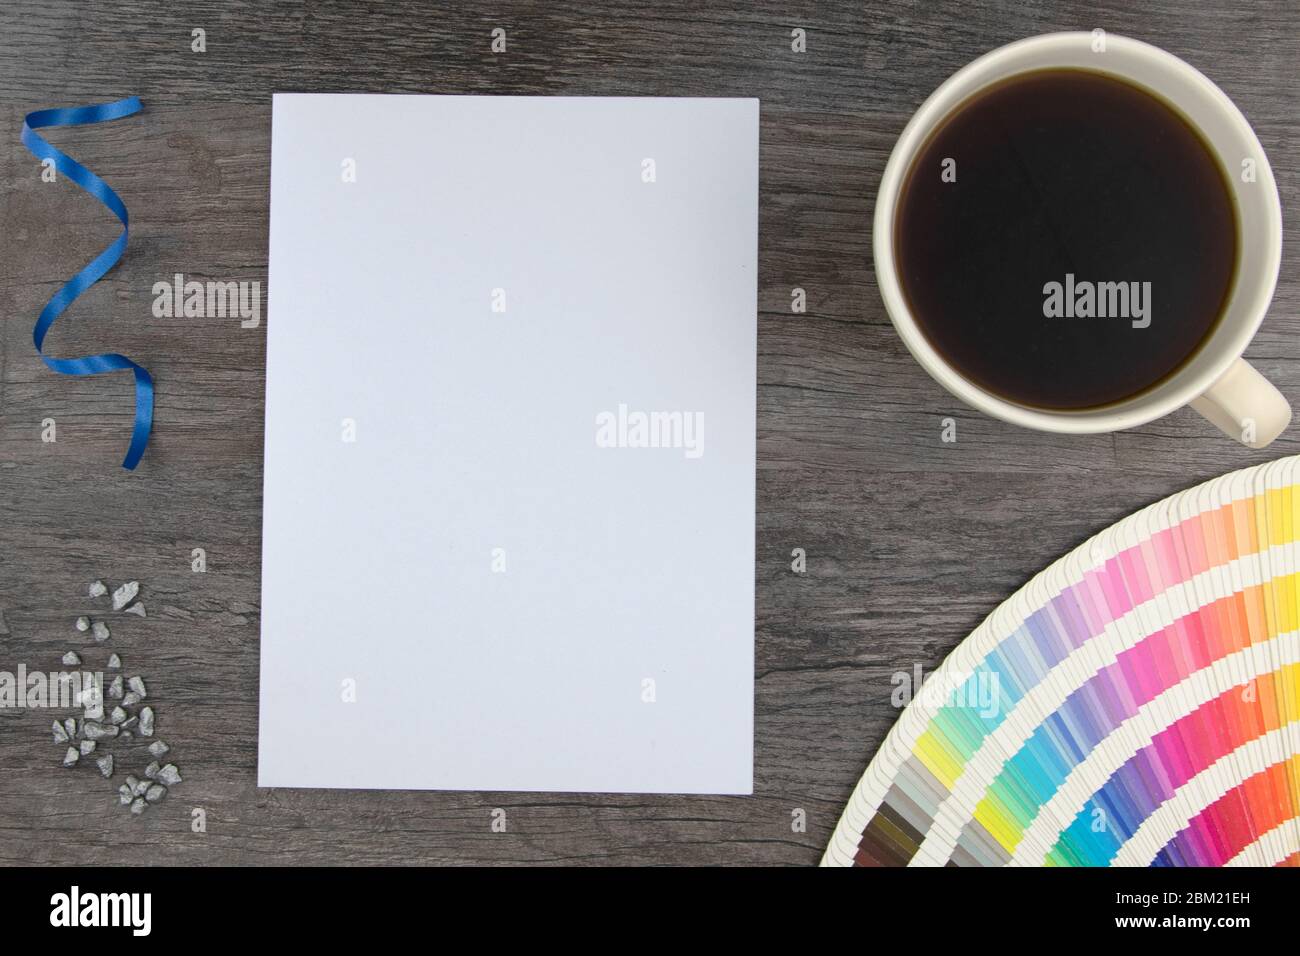 Vue de dessus de la page blanche vide et des cartes de la gamme de couleurs avec une tasse de café sur un plateau en bois Banque D'Images